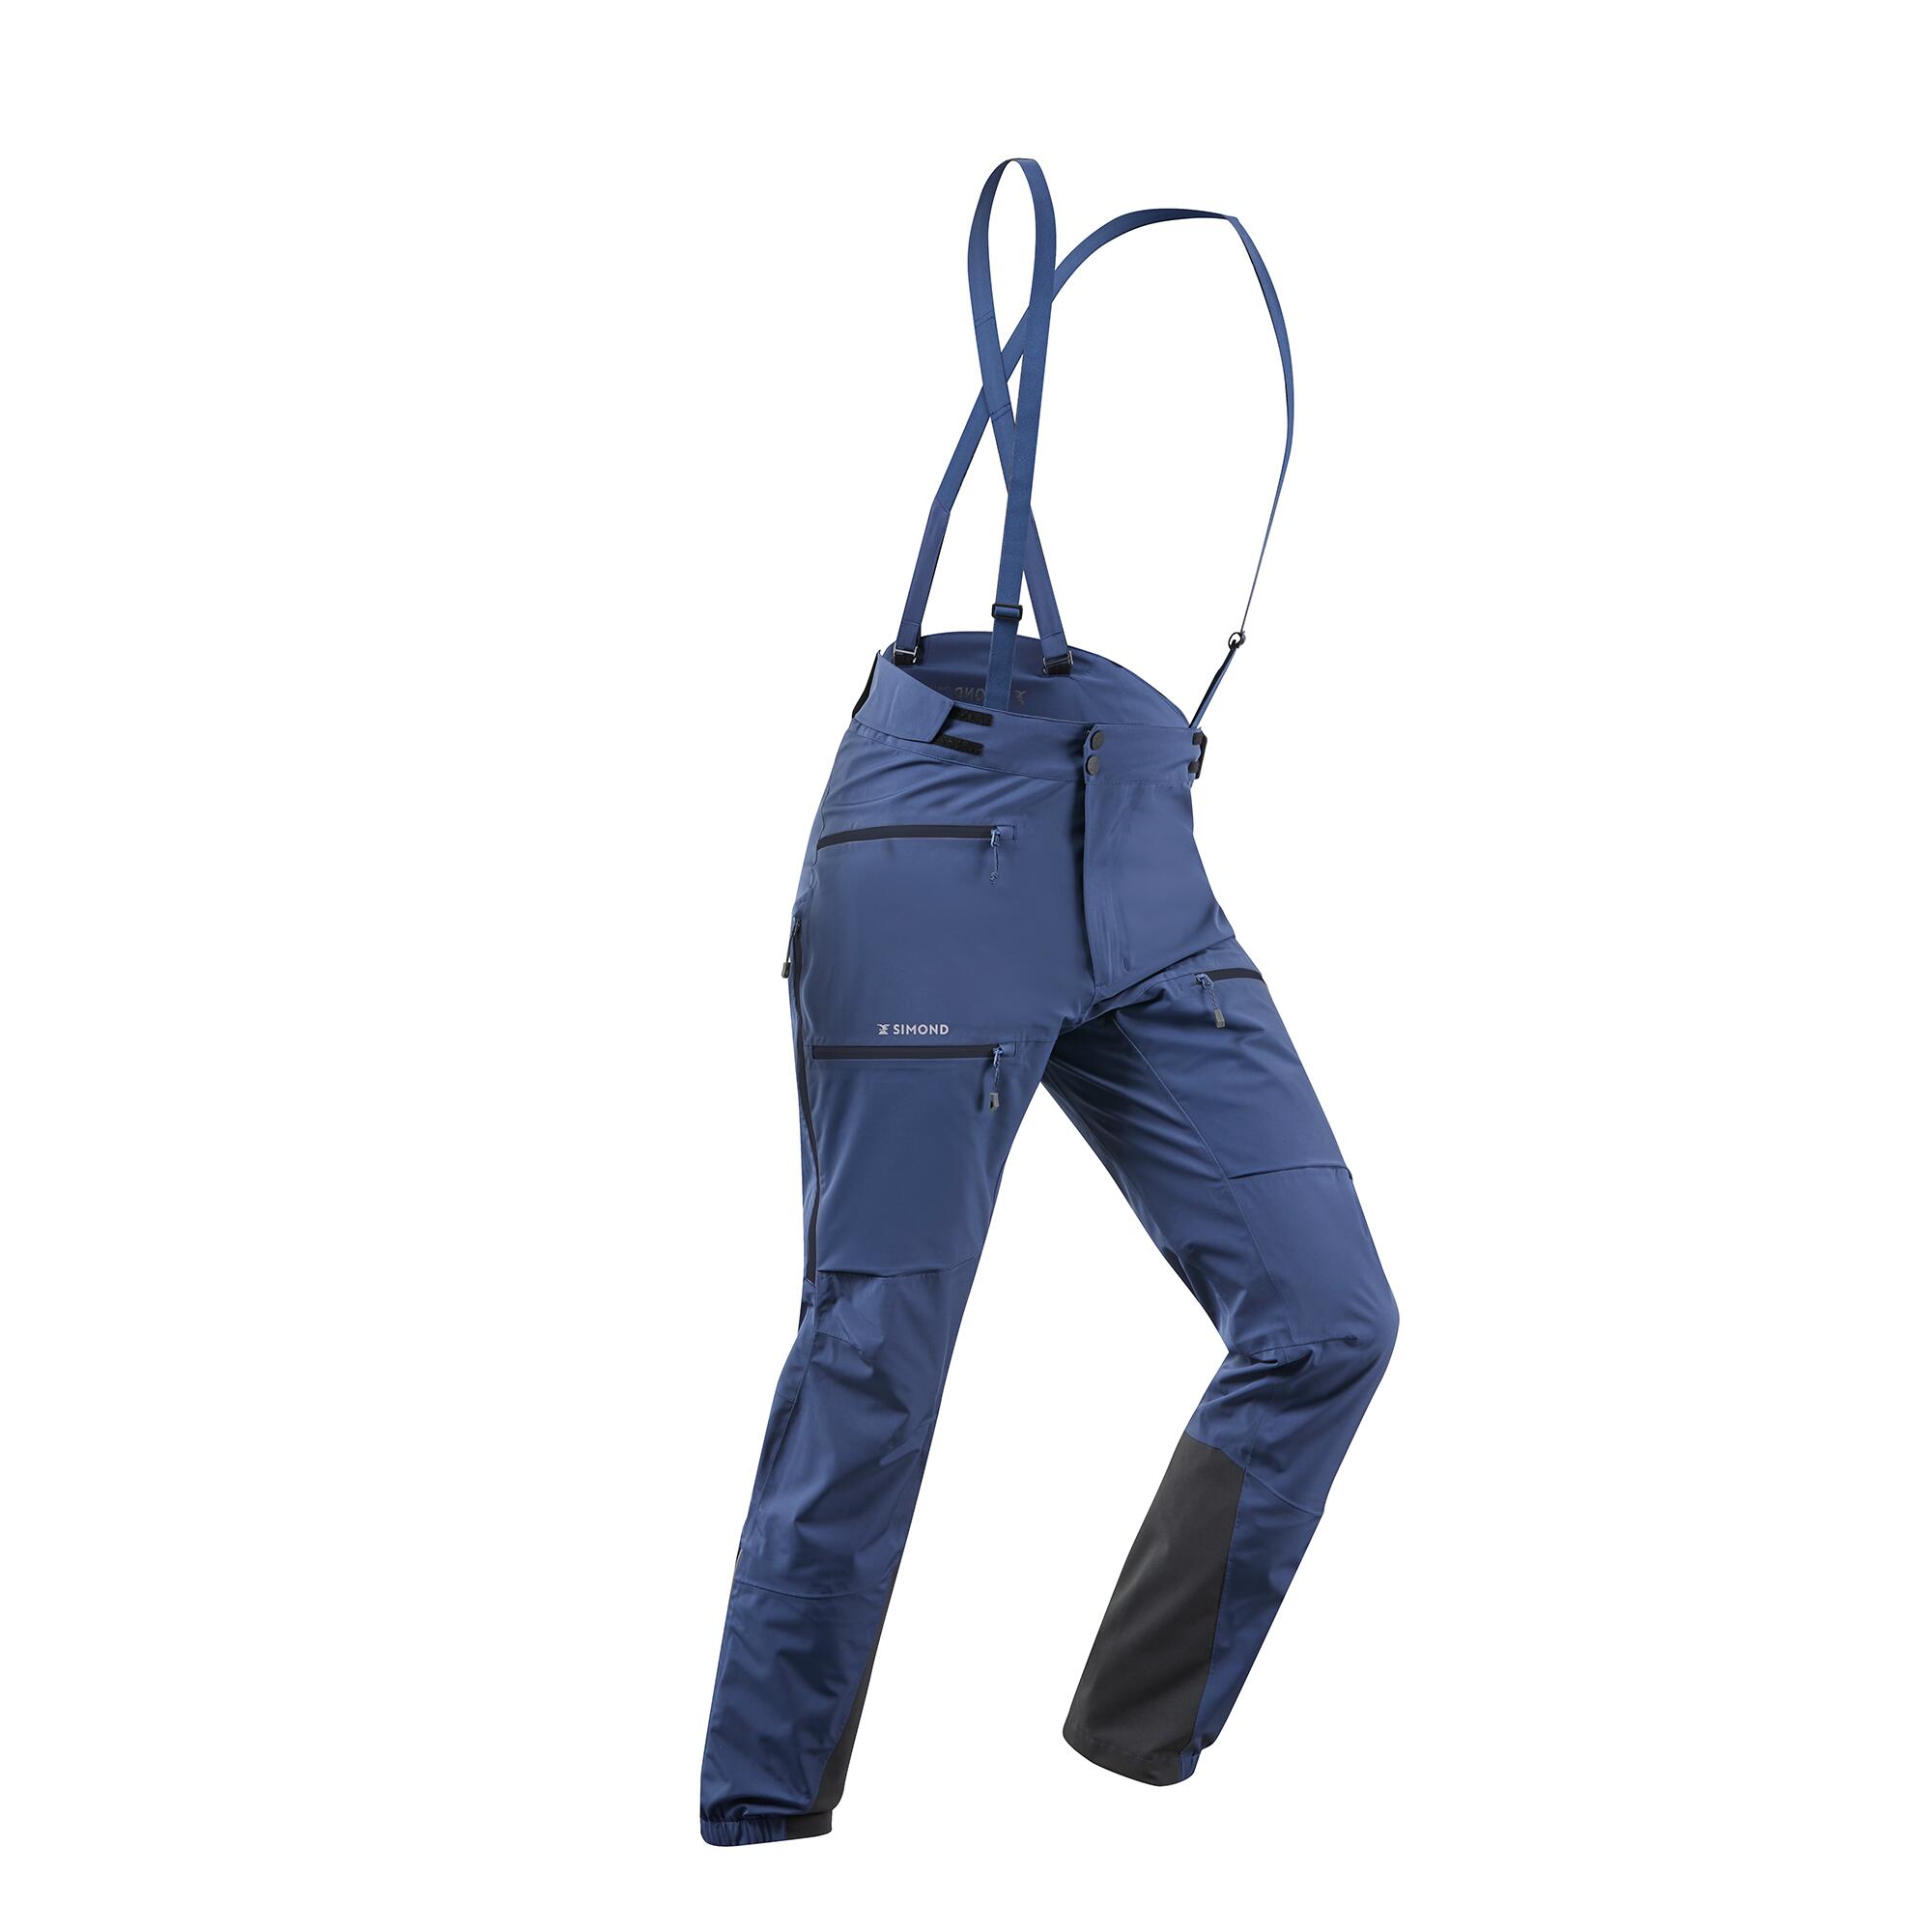 SIMOND Men's mountaineering waterproof ICE trousers - Slate blue